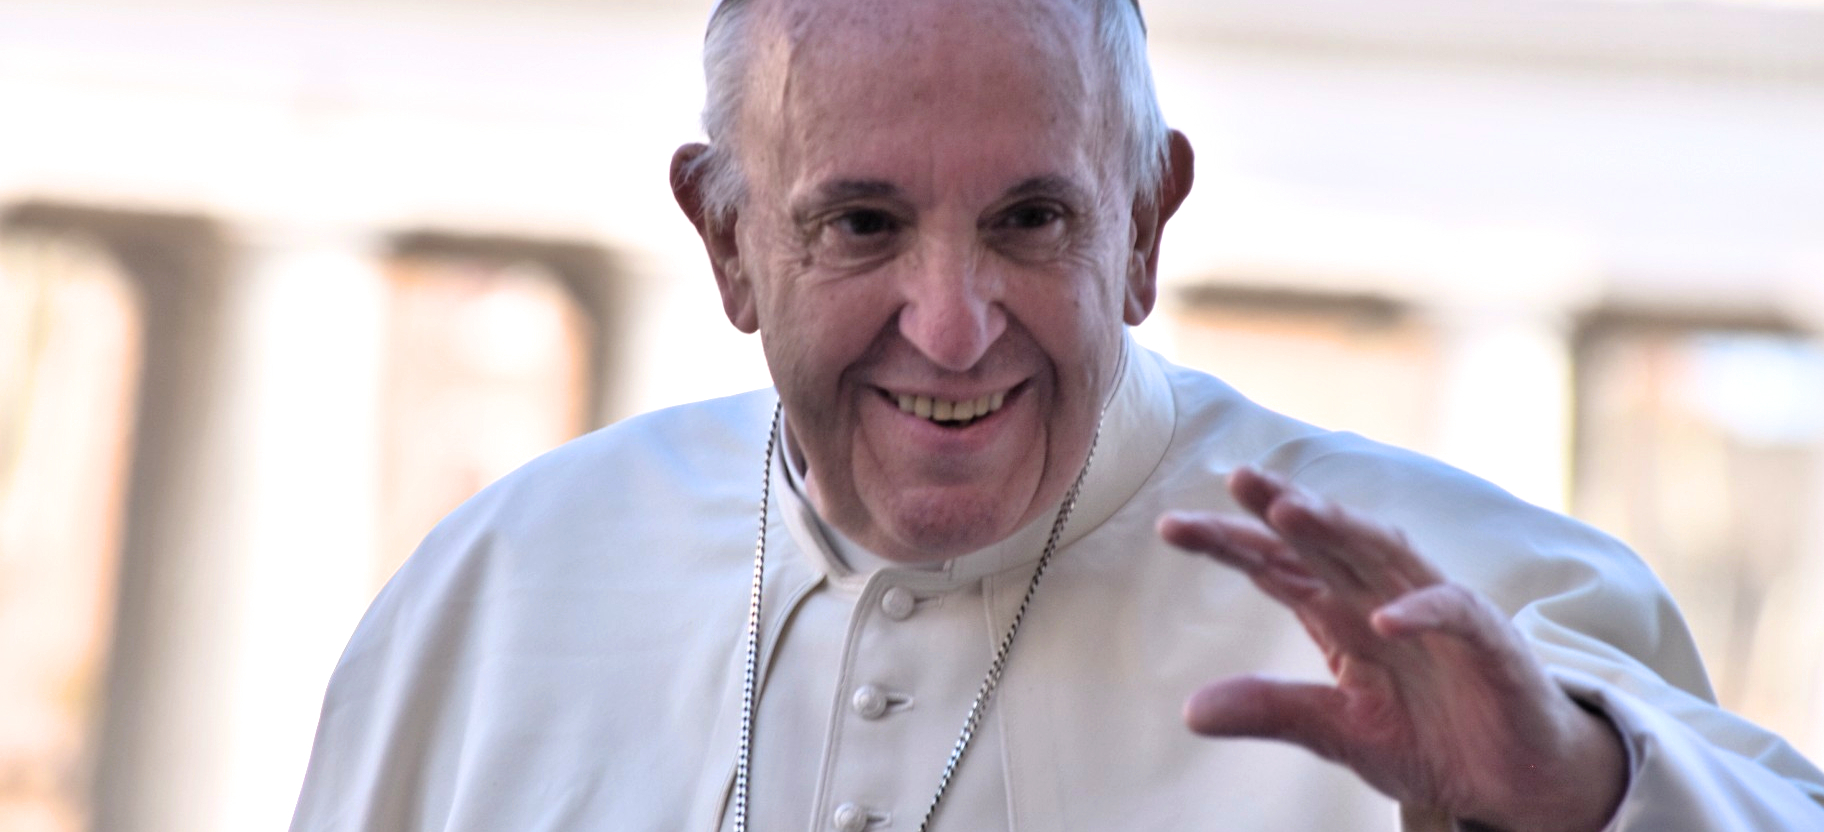 Des catholiques du monde entier souhaitent un prompt rétablissement au pape François, qui doit subir une opération le 7 juin 2023 | © Jacques Berset